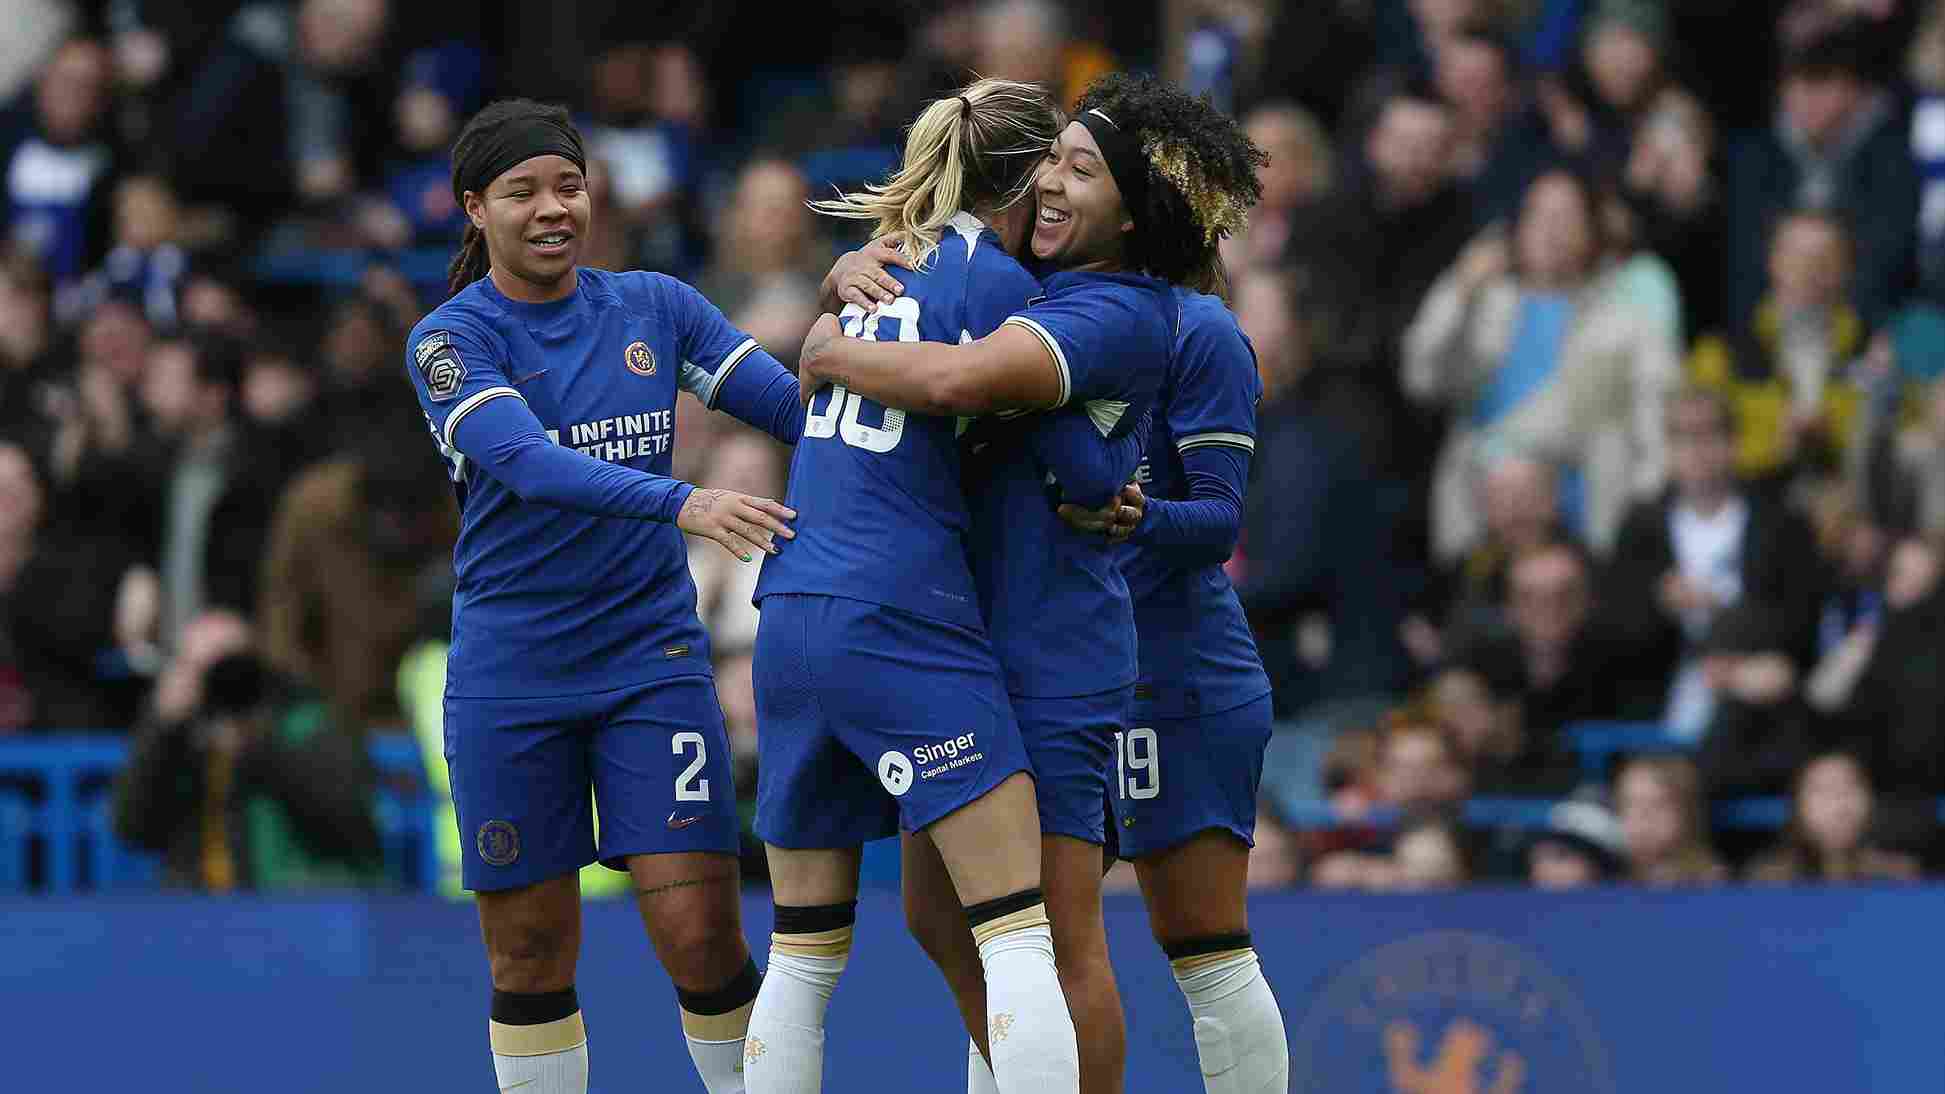  Barclays-Women's-Super-League es una liga de fútbol femenino patrocinada por Barclays. 